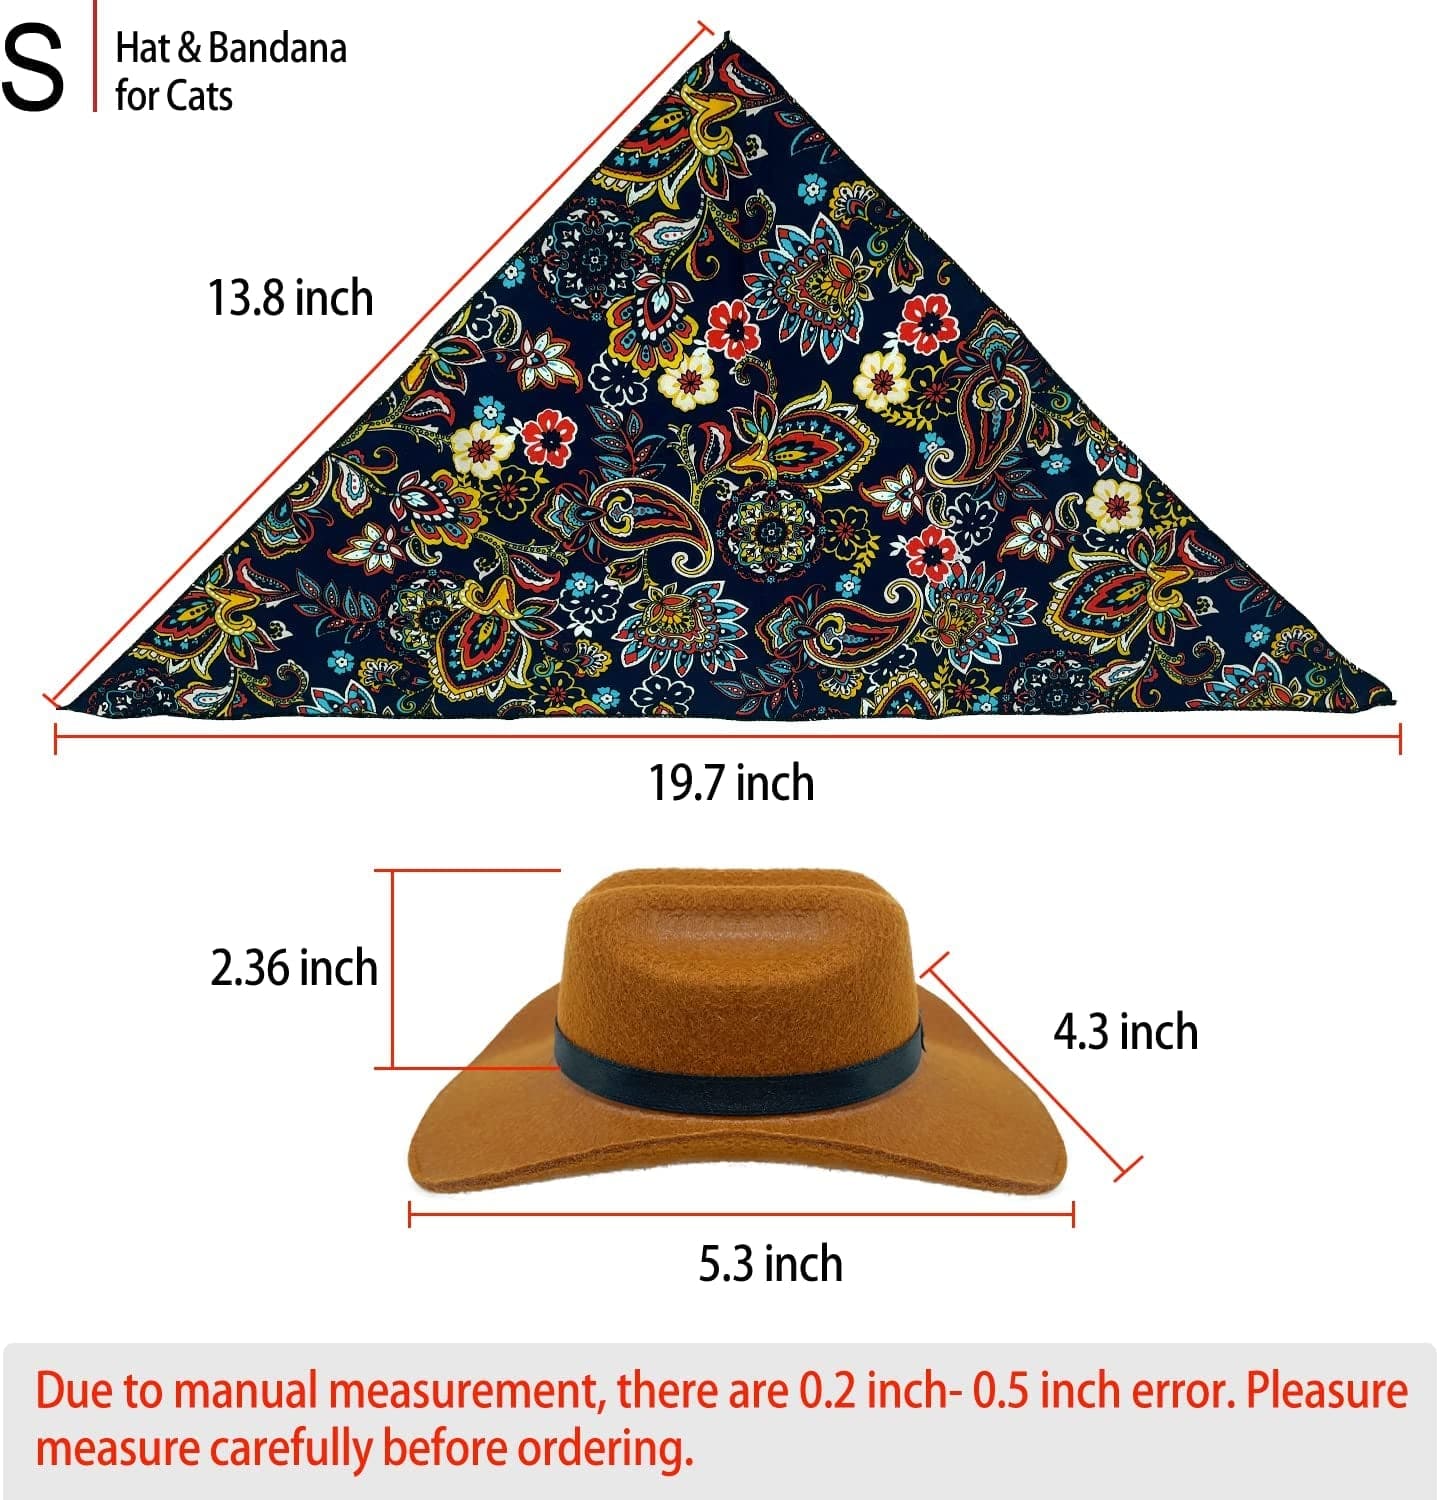 Western Hat Accessories